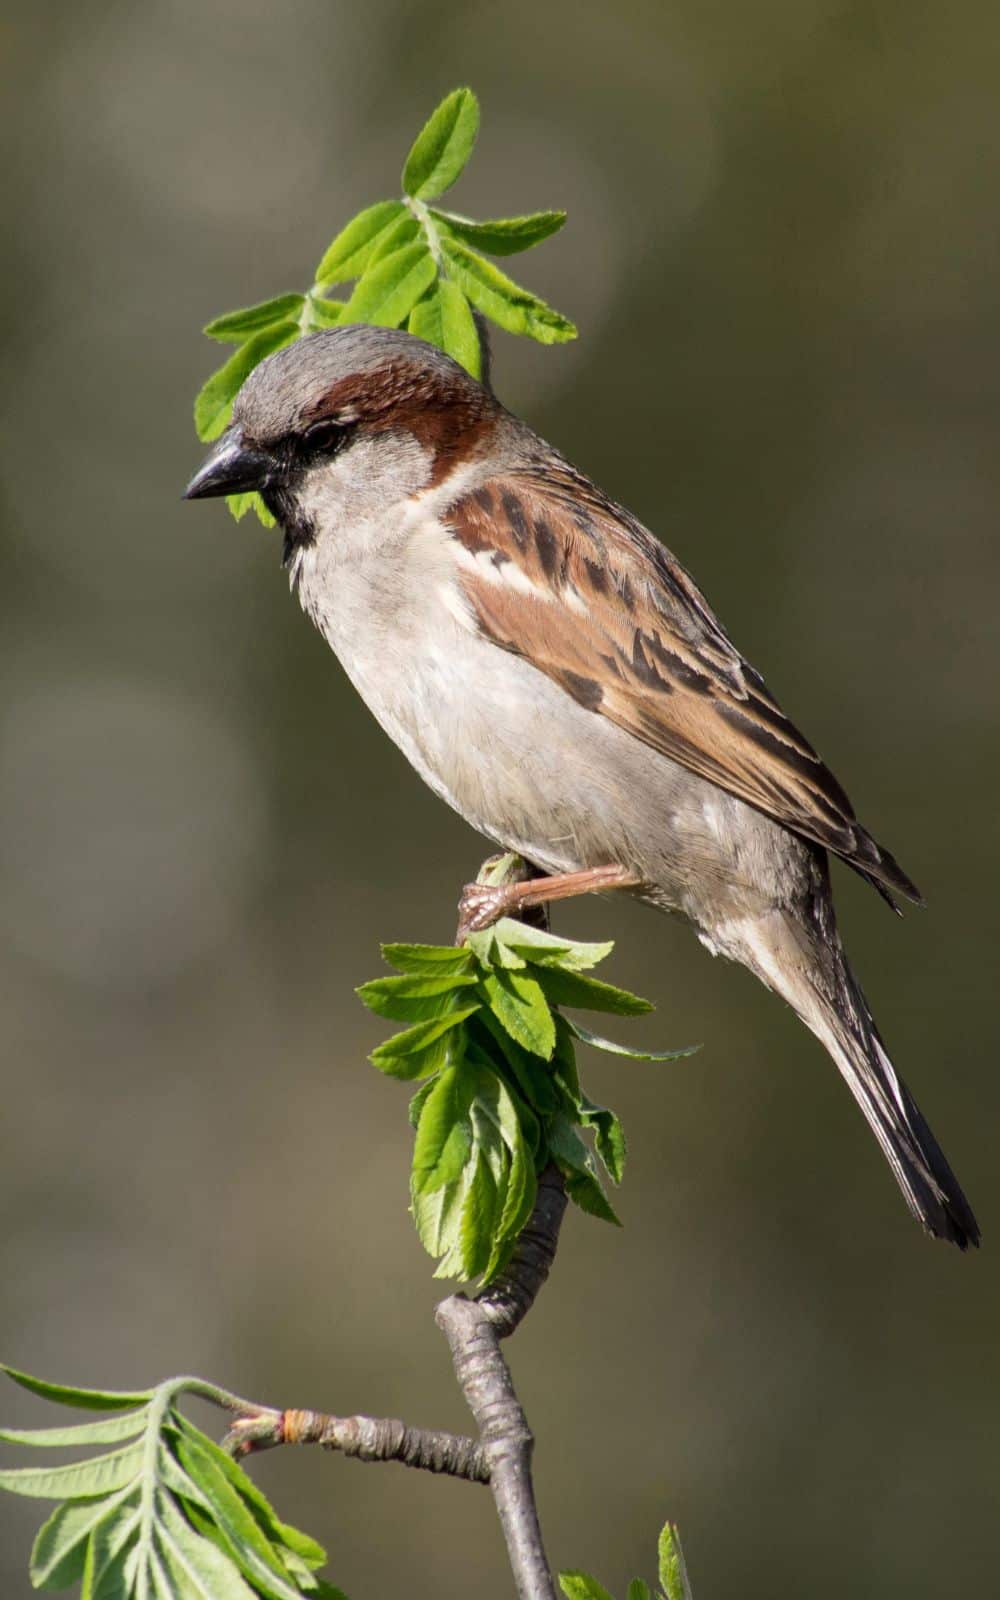 Sparrow symbolism